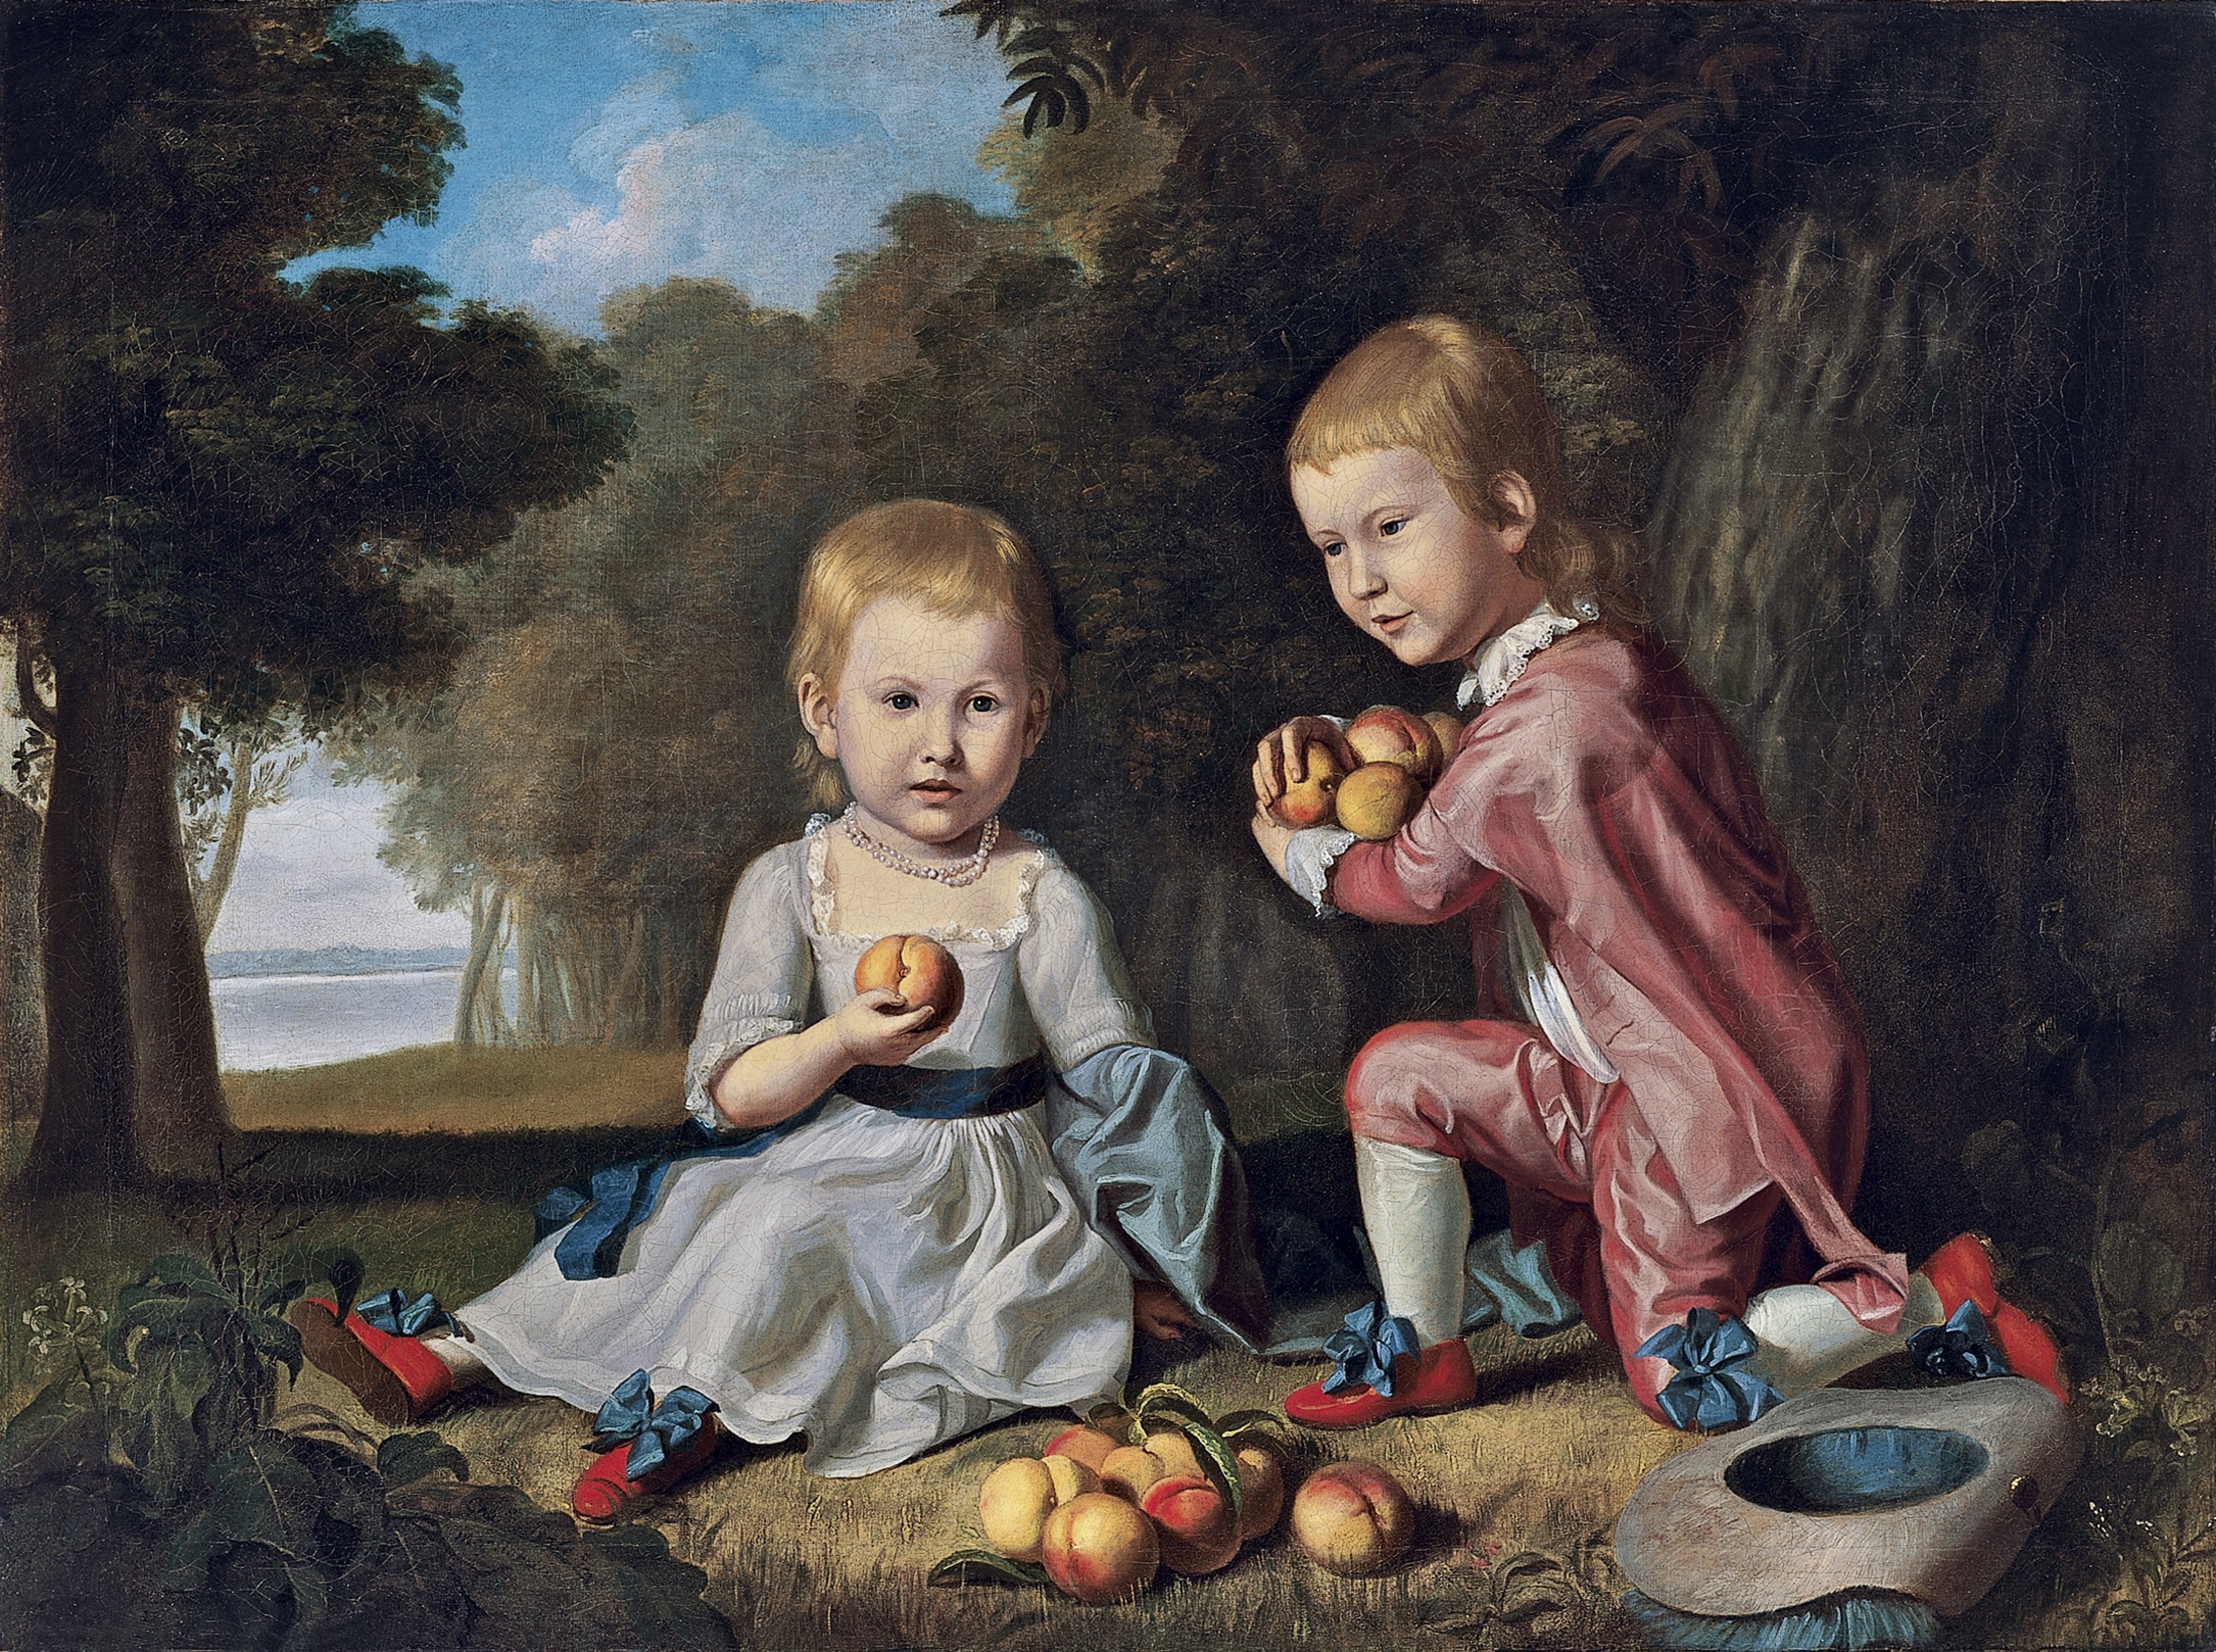 Retrato de Isabella y John Stewart. Charles Willson Peale